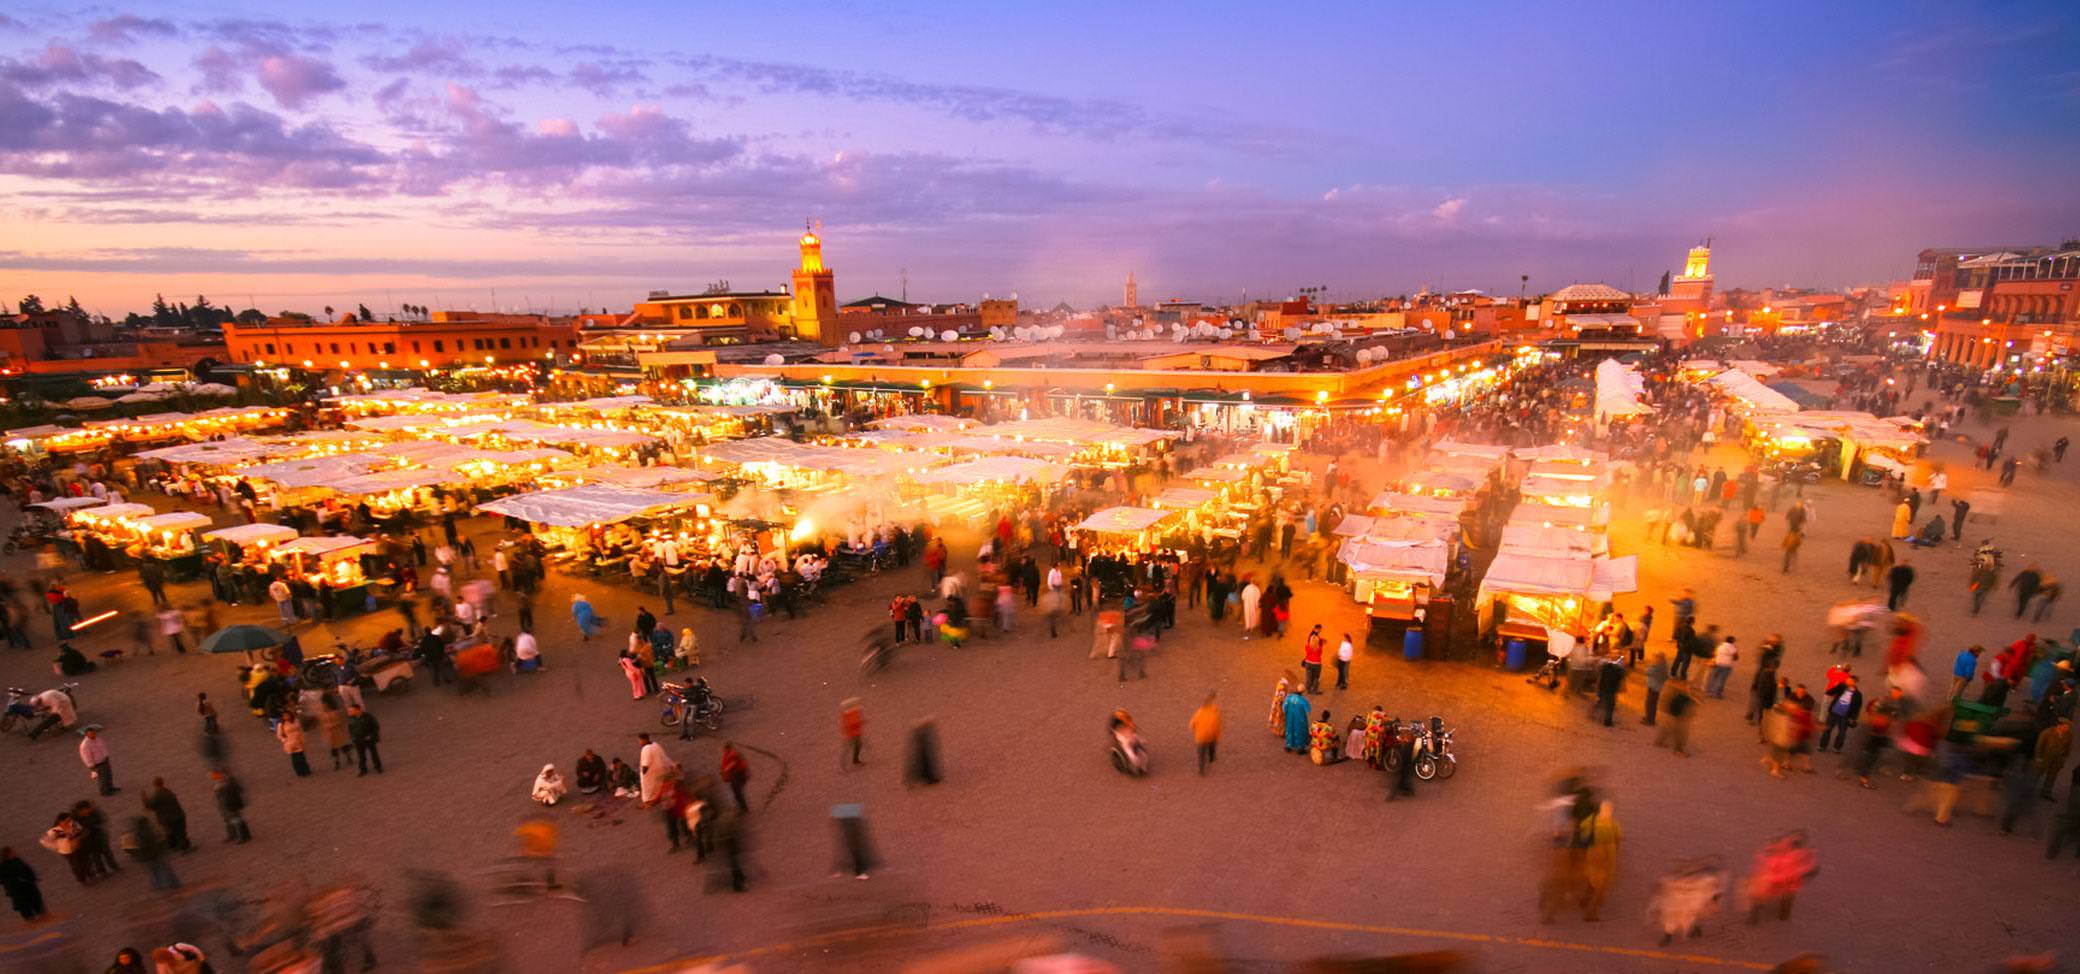 marrakech trips morocco tours